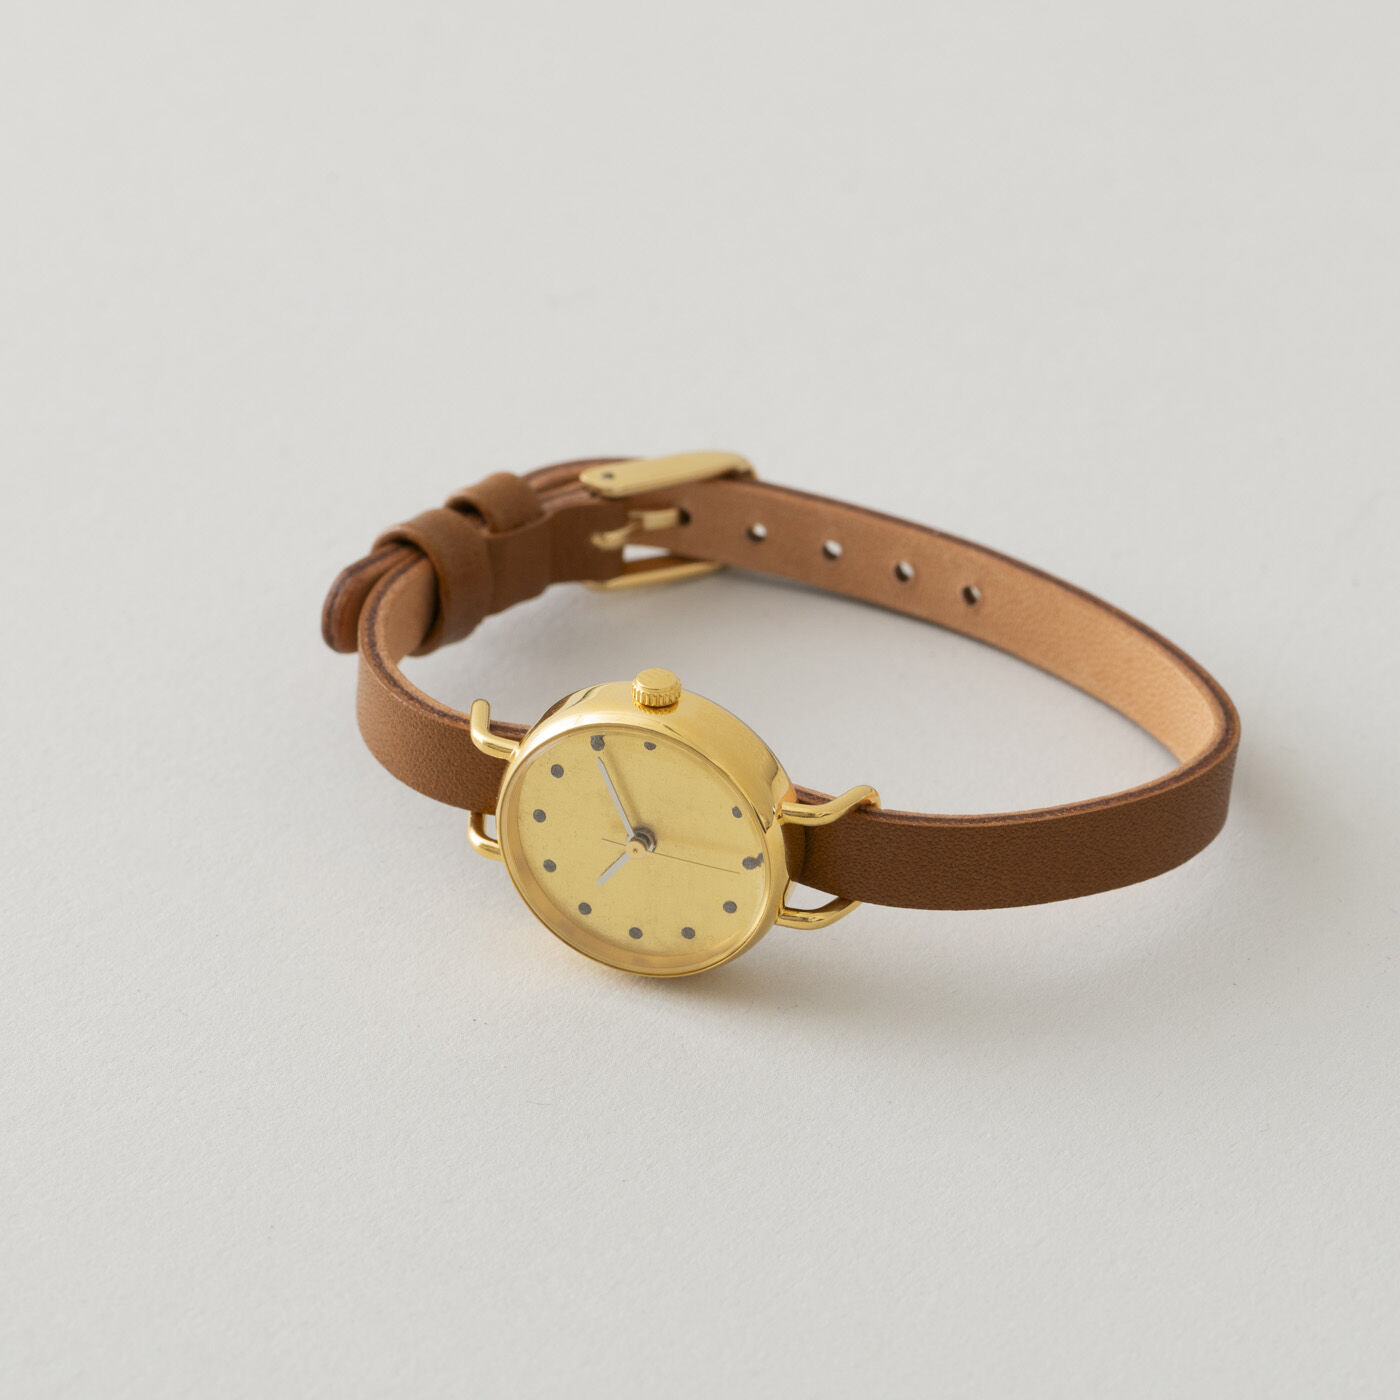 ＆Stories|金沢の時計職人が手掛けた　金色の月に見惚れる腕時計〈ライトブラウン〉|穏やかに輝く文字盤と華奢なレザーベルトの組み合わせは、どんな装いにもなじみながら、手もとを美しく見せてくれることでしょう。